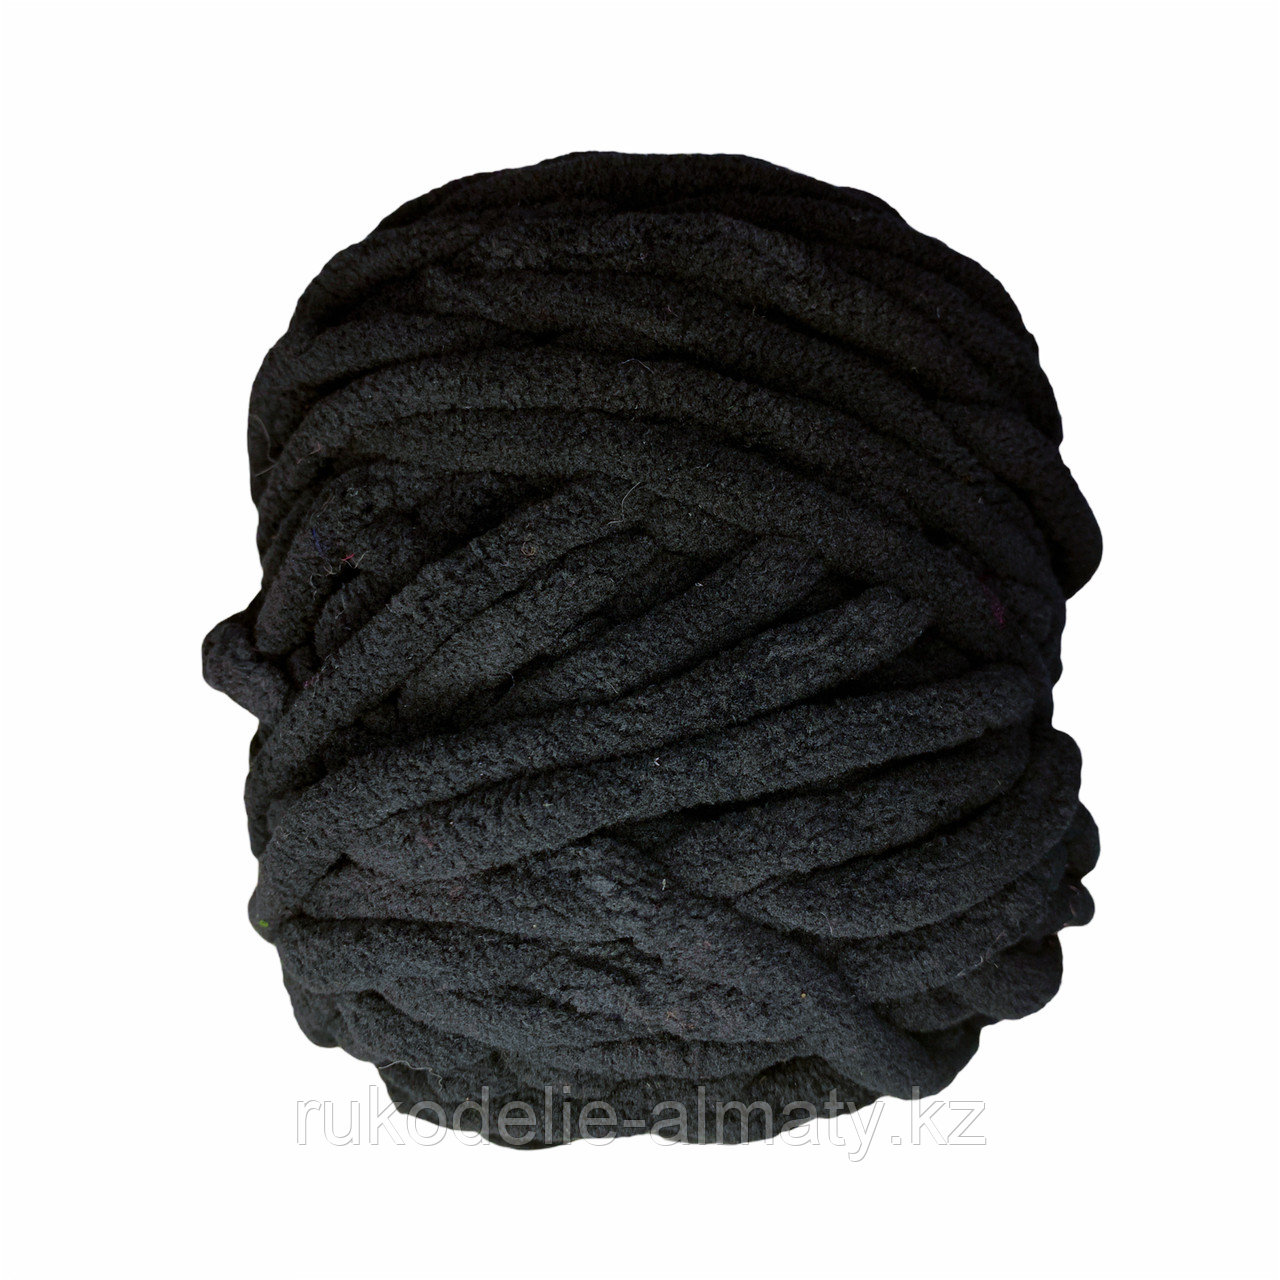 Велюровая пряжа для ручного вязания, толщиной 0,8 мм черный